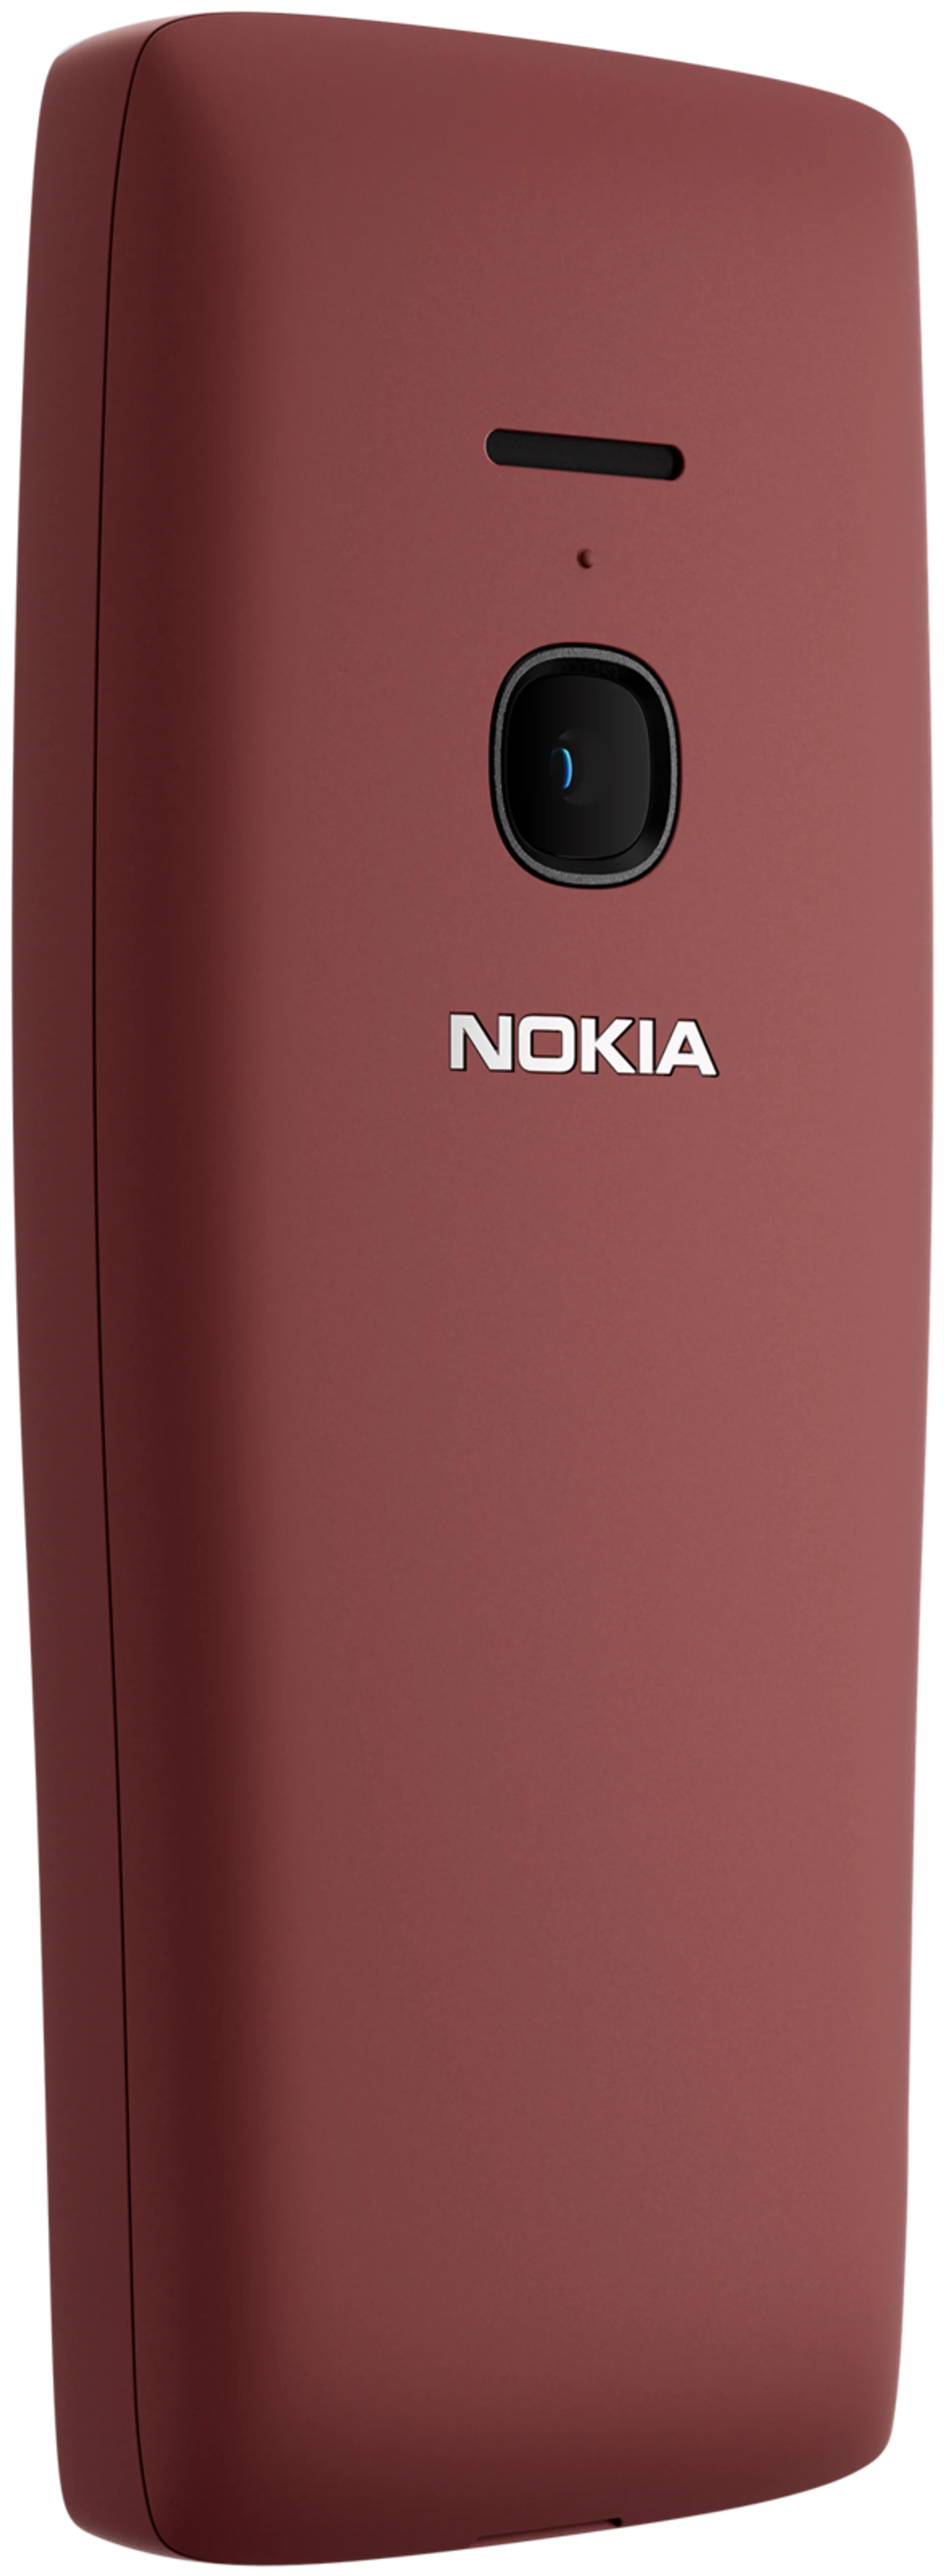 Nokia 8210 4G punainen peruspuhelin - 4